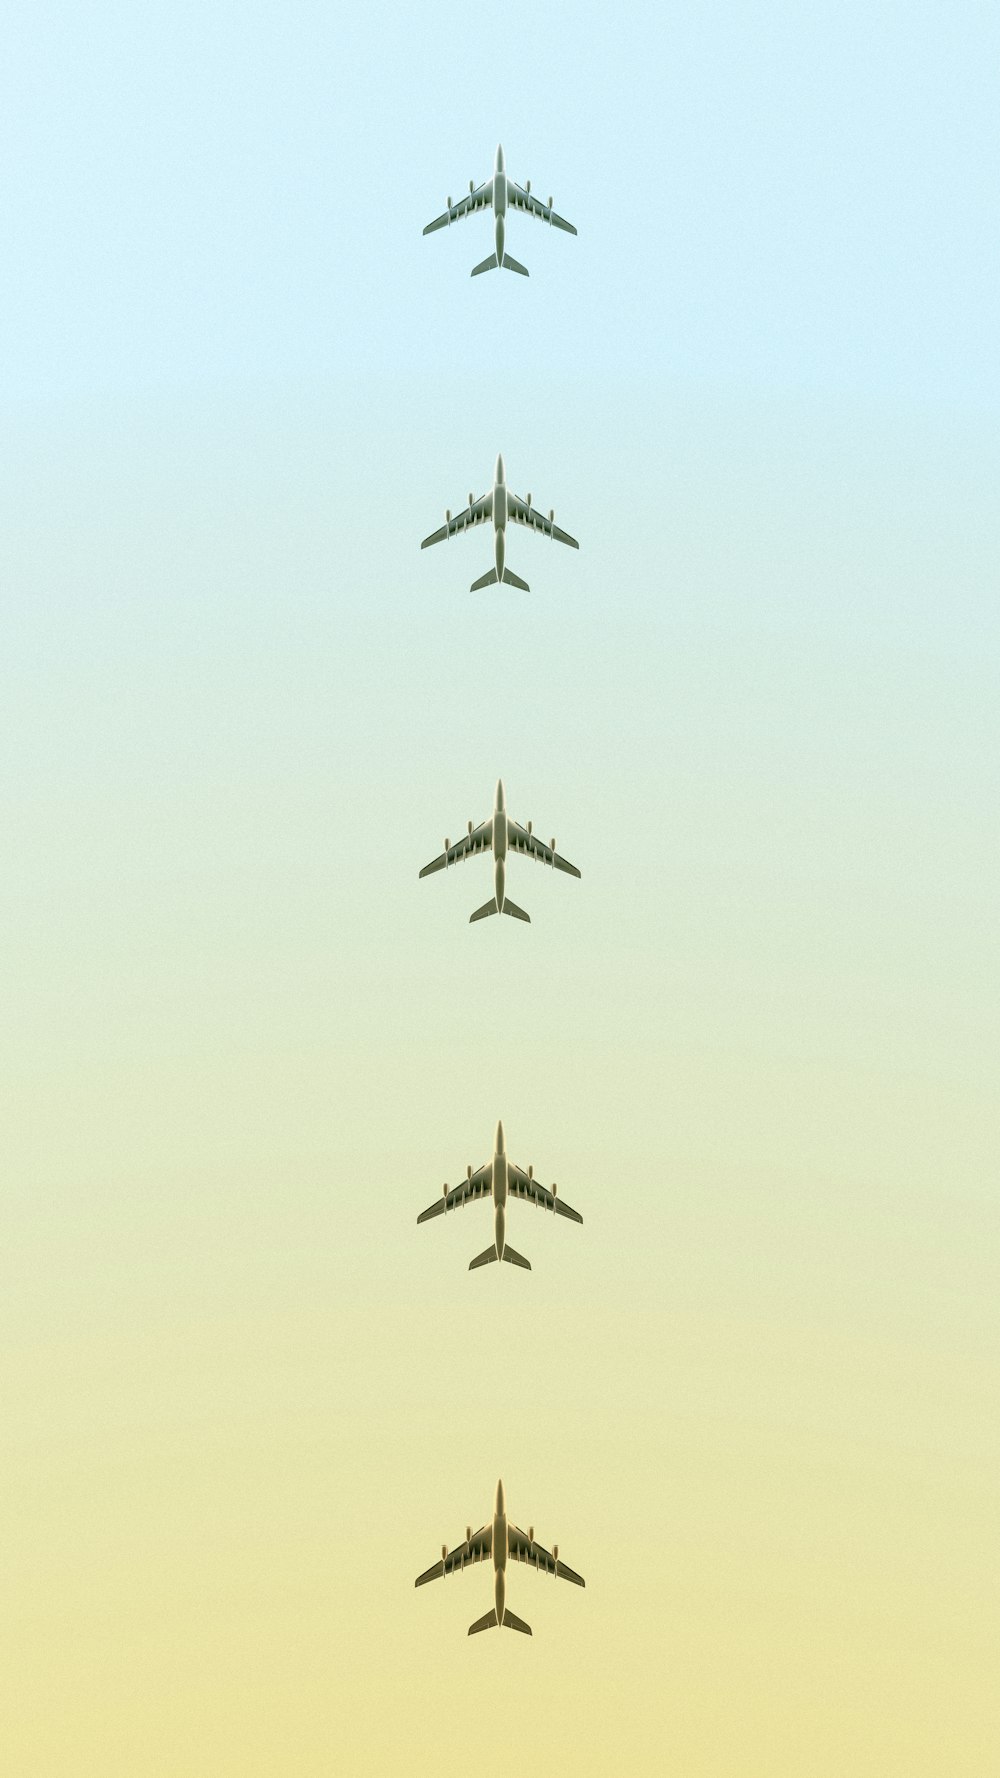 Eine Gruppe von Flugzeugen, die am Himmel fliegen